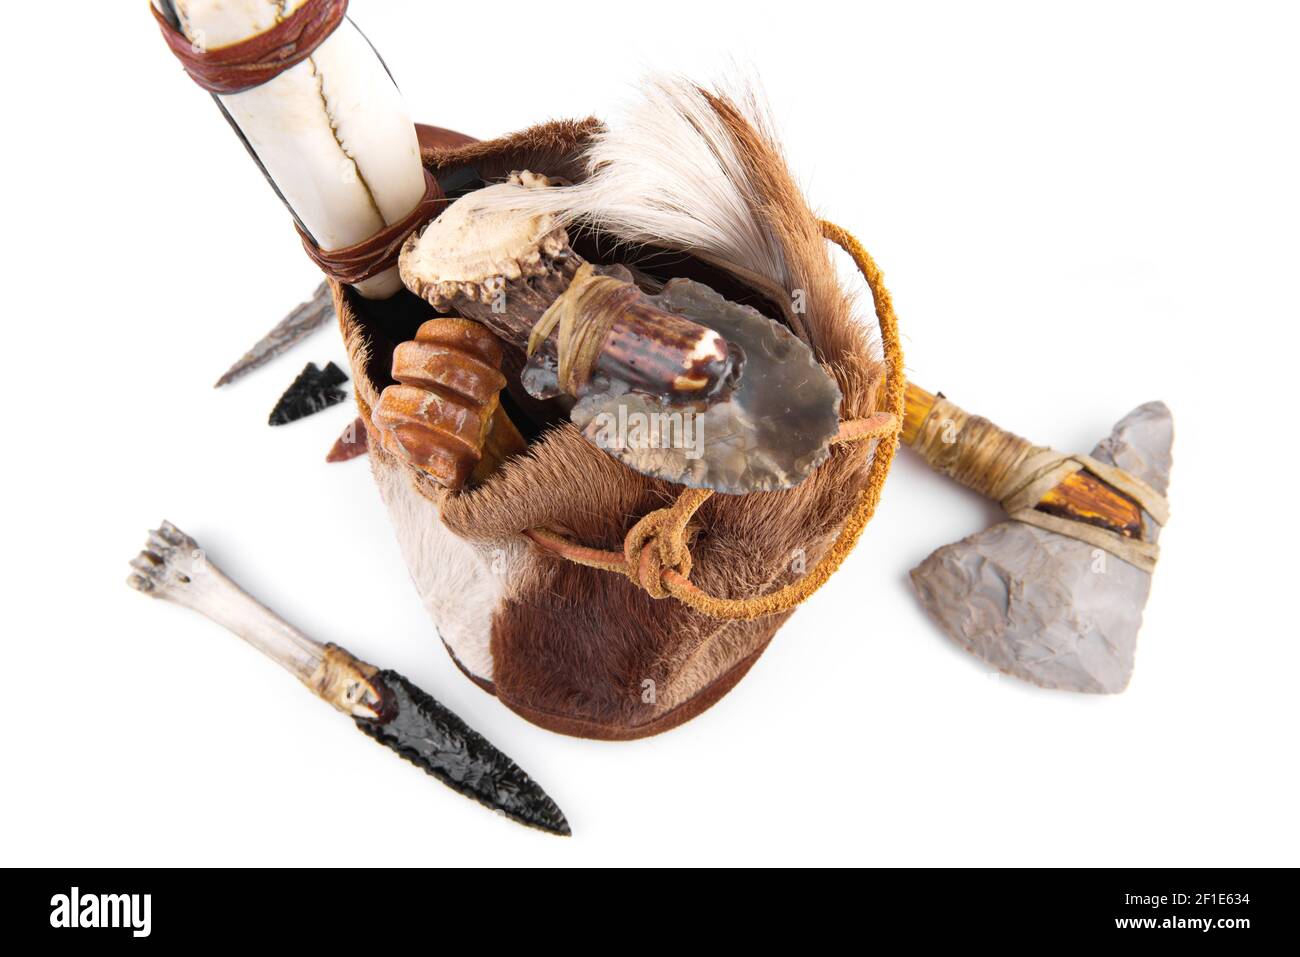 Steinzeit-Handtasche mit Cavemen Ax, Werkzeug und Messer auf weißem Hintergrund Stockfoto